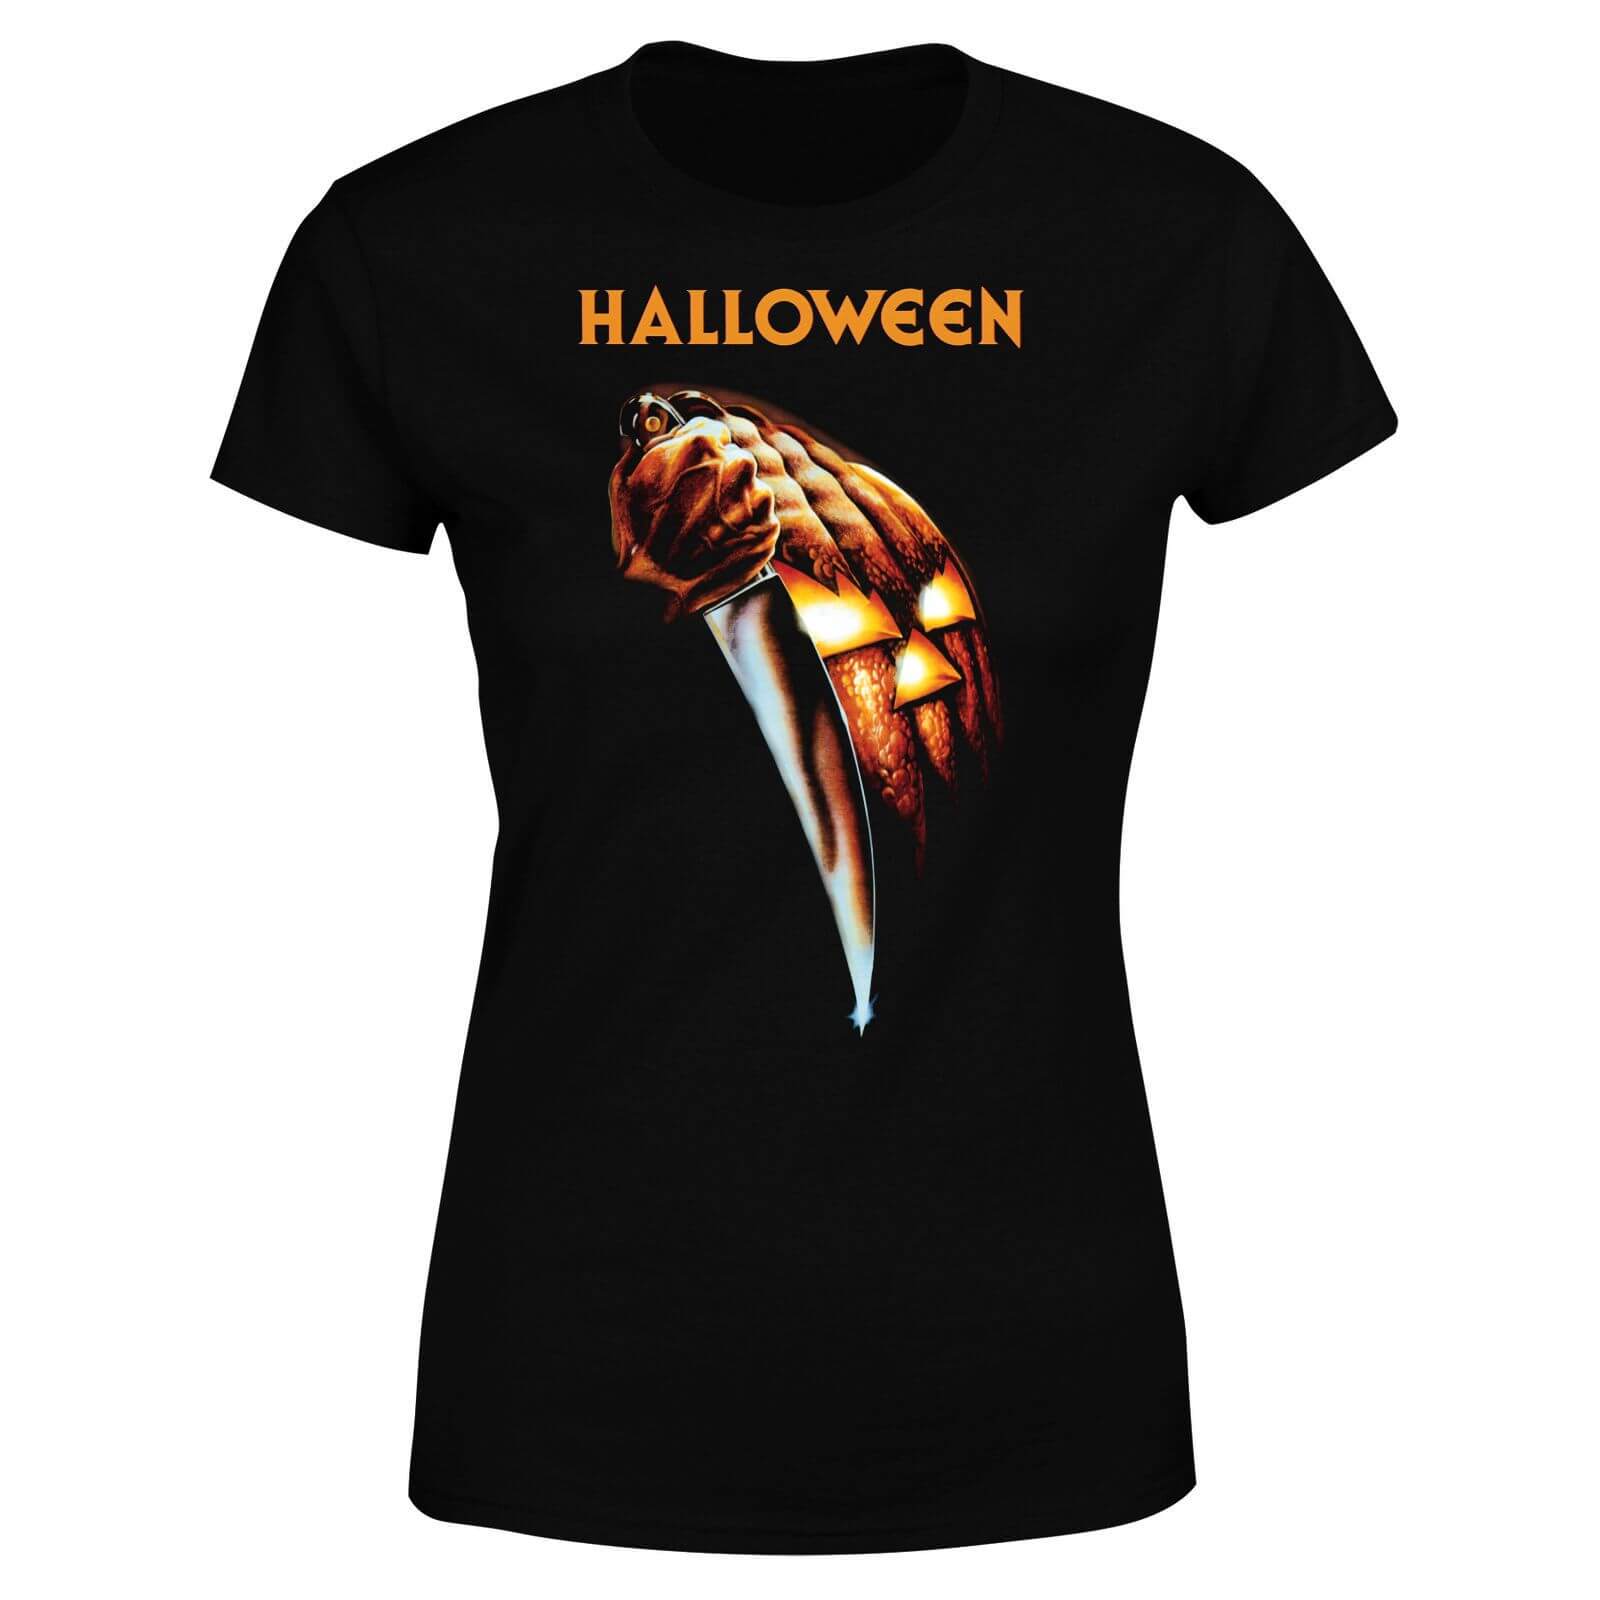 Halloween Pumpkin Women's T-Shirt - Black - 4XL